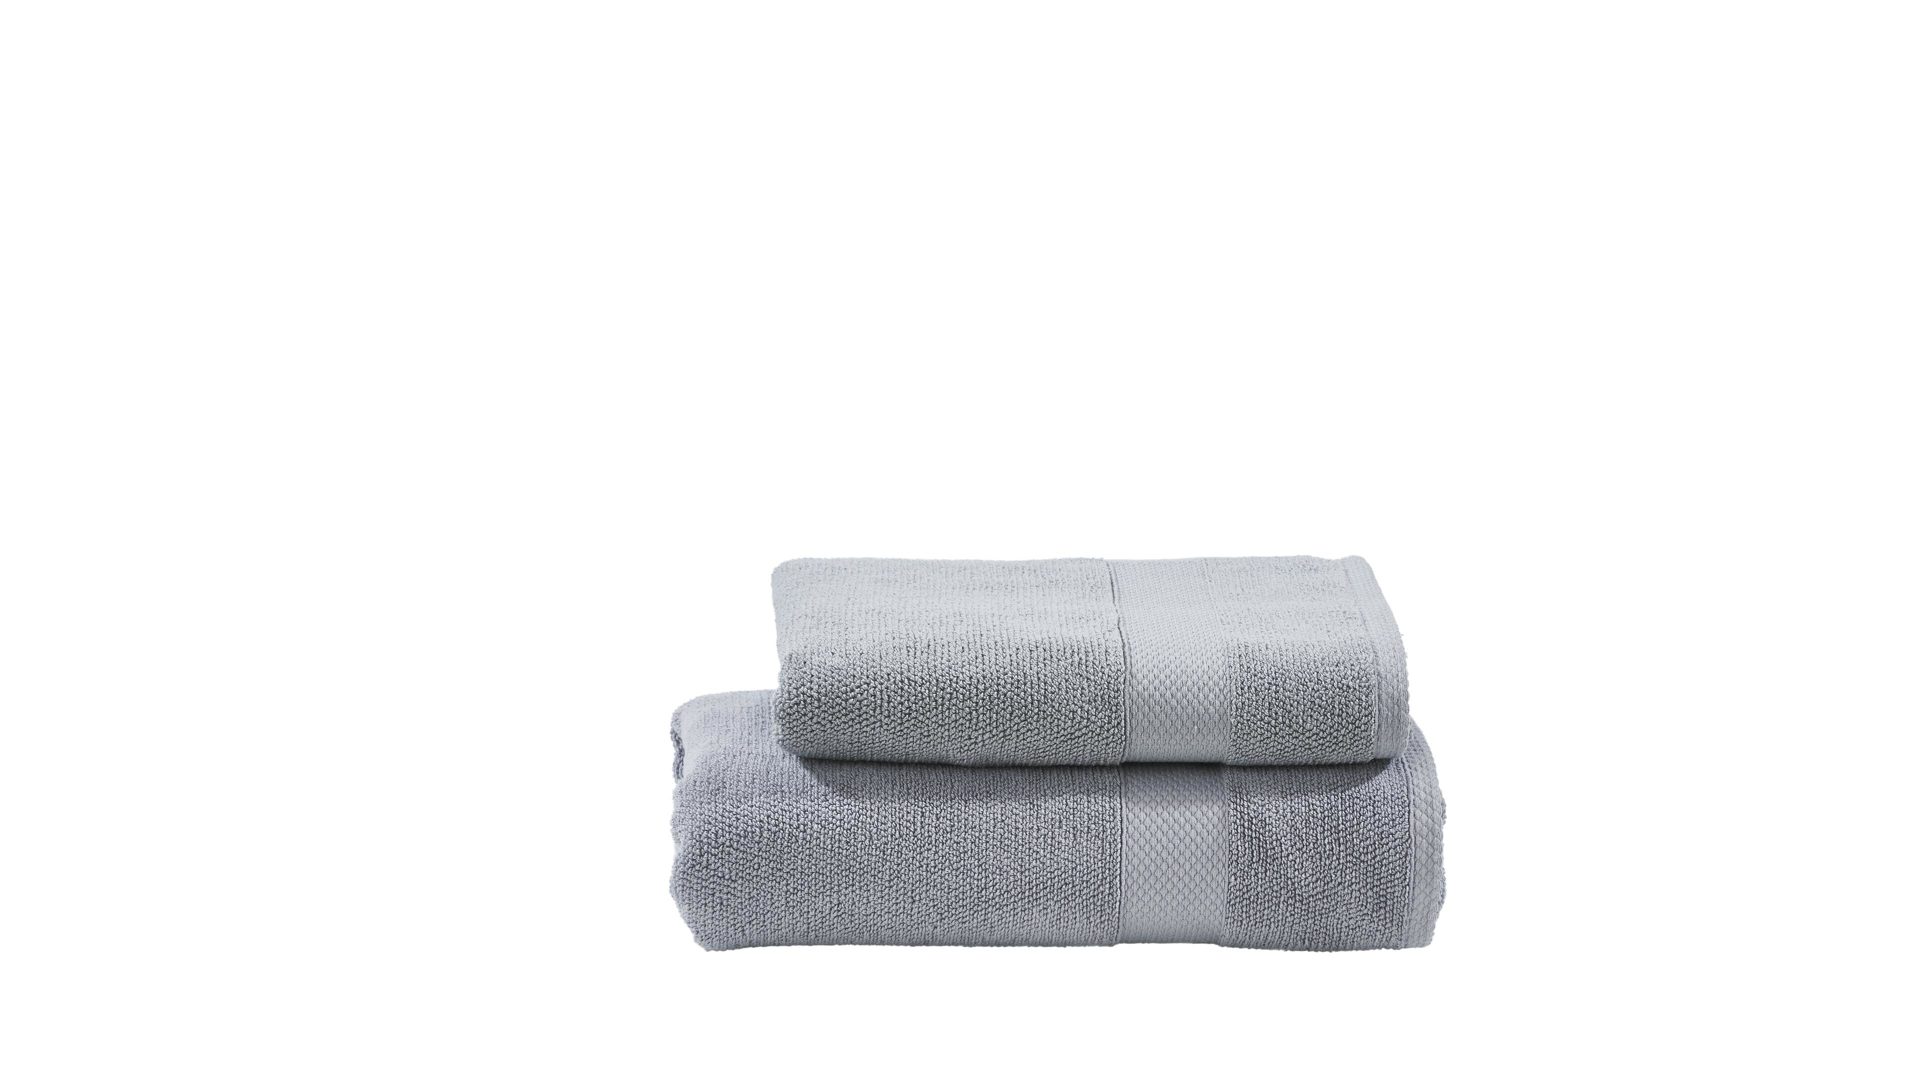 Handtuch-Set Done® by karabel home company aus Stoff in Hellgrau DONE® Handtuch-Set Deluxe - Heimtextilien silberfarbene Baumwolle – zweiteilig